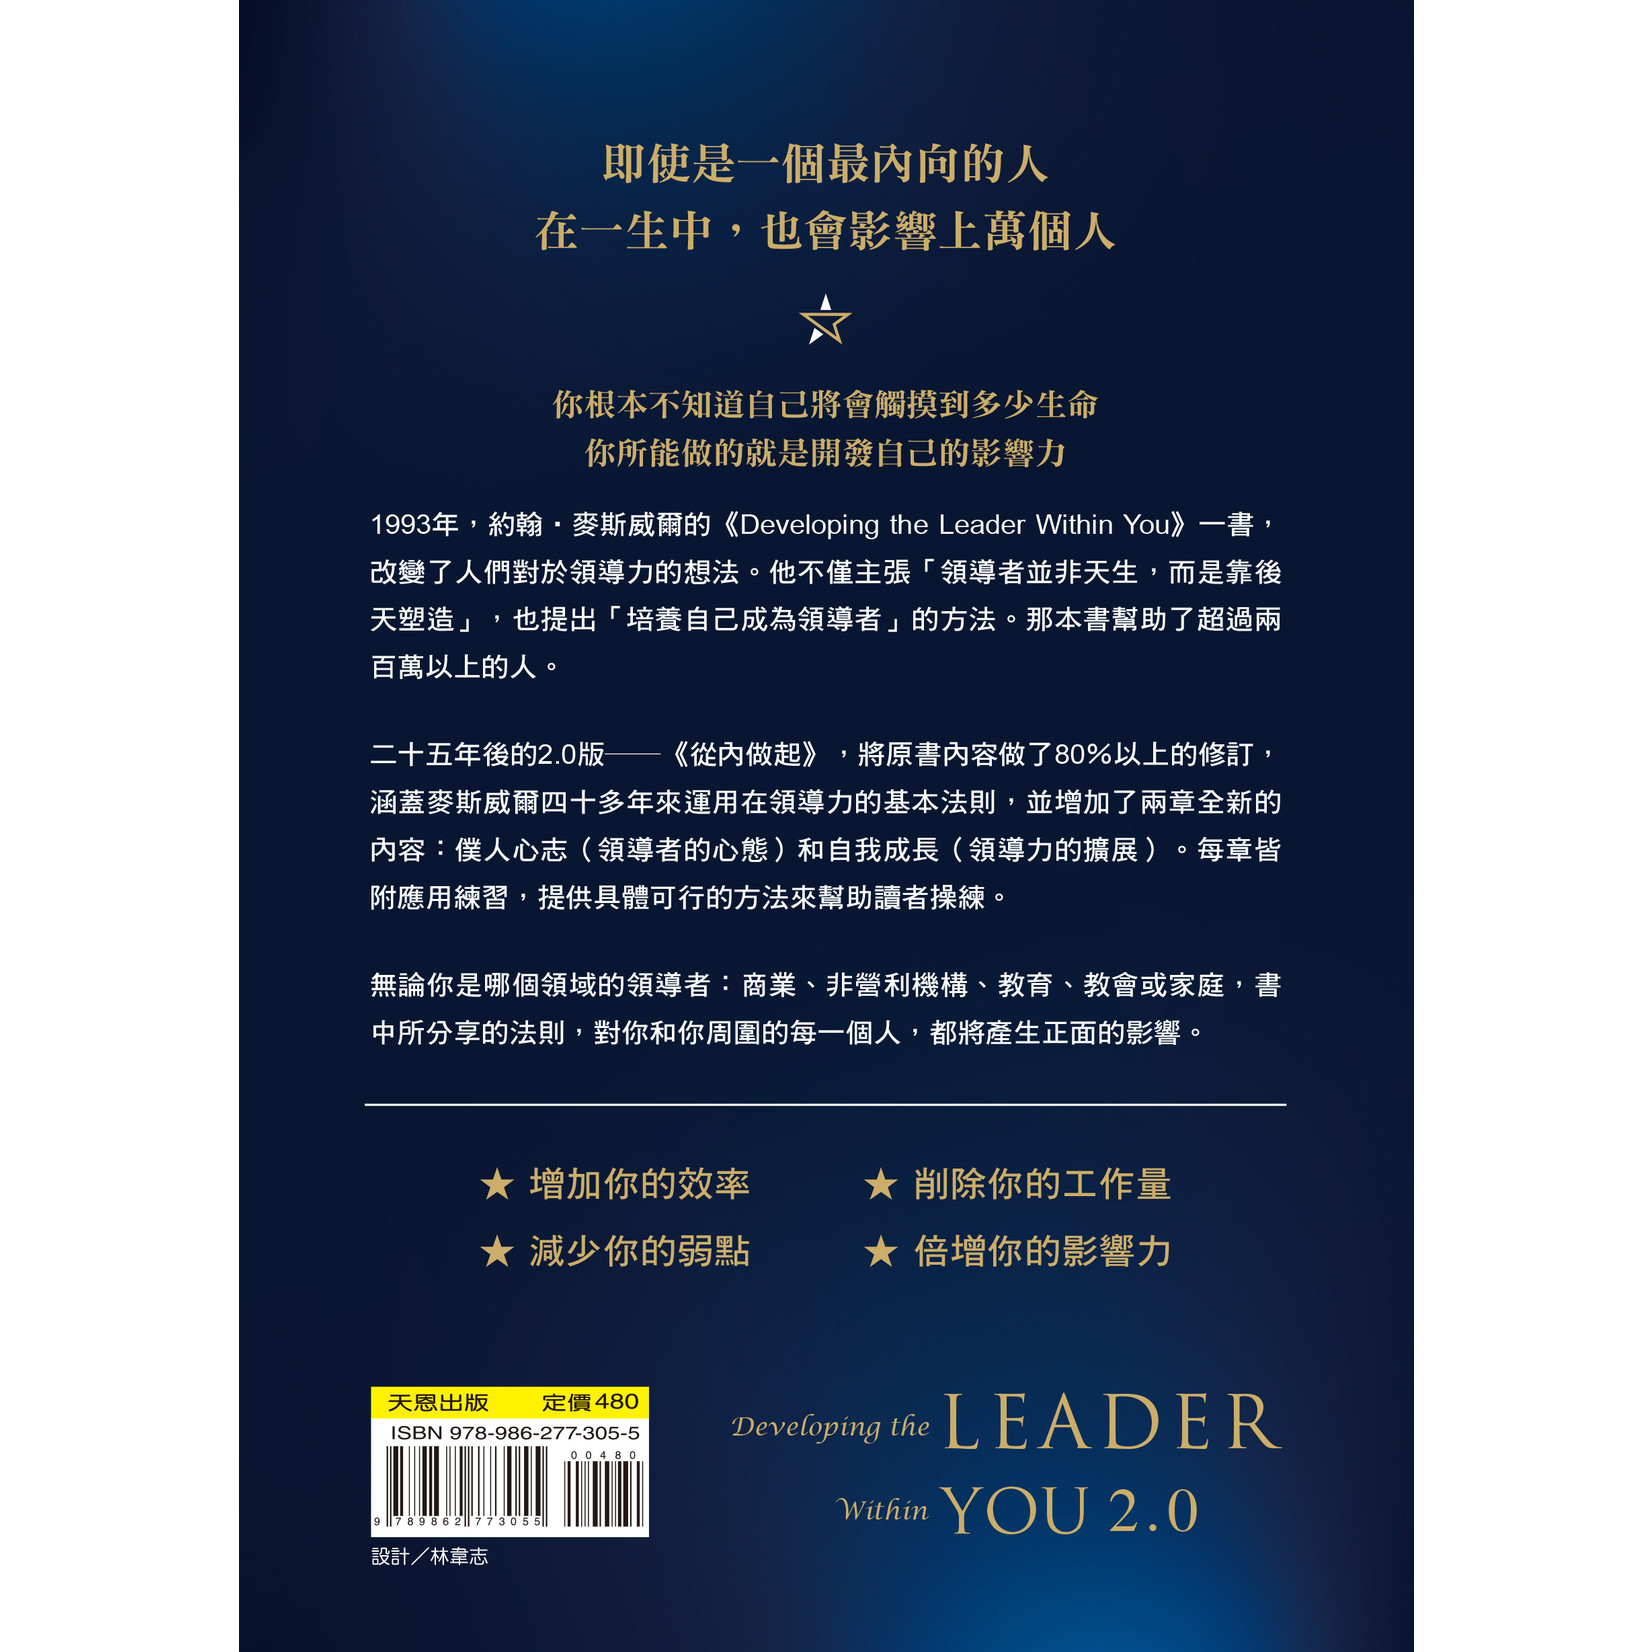 天恩 Grace Publishing House 從內做起：頂尖領導大師淬鍊25年的10堂課 Developing the leader within you 2.0